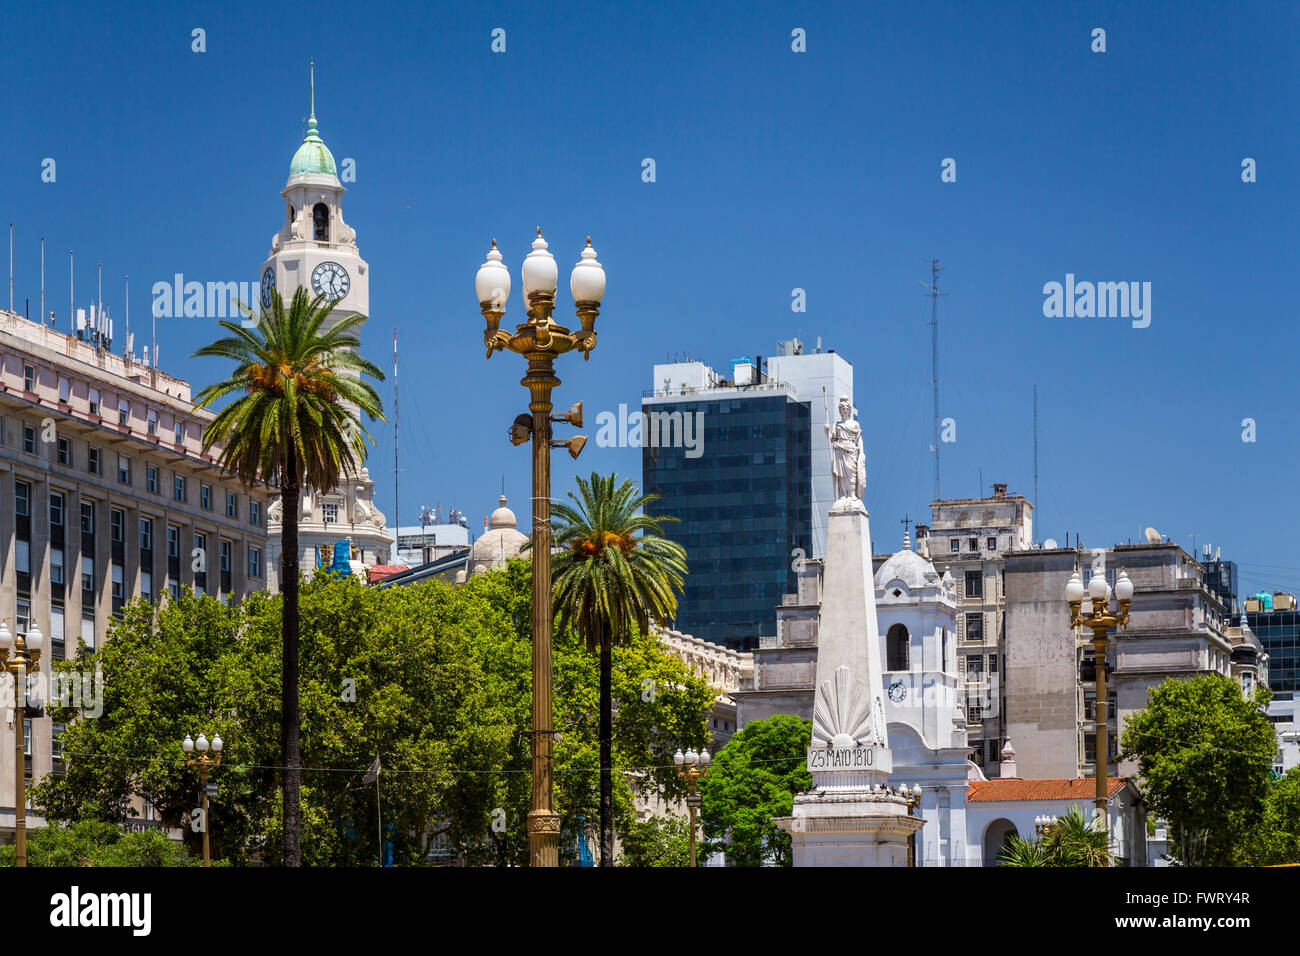 Architektur und Denkmäler an der Plaza de Mayo in Buenos Aires, Argentinien, Südamerika. Stockfoto